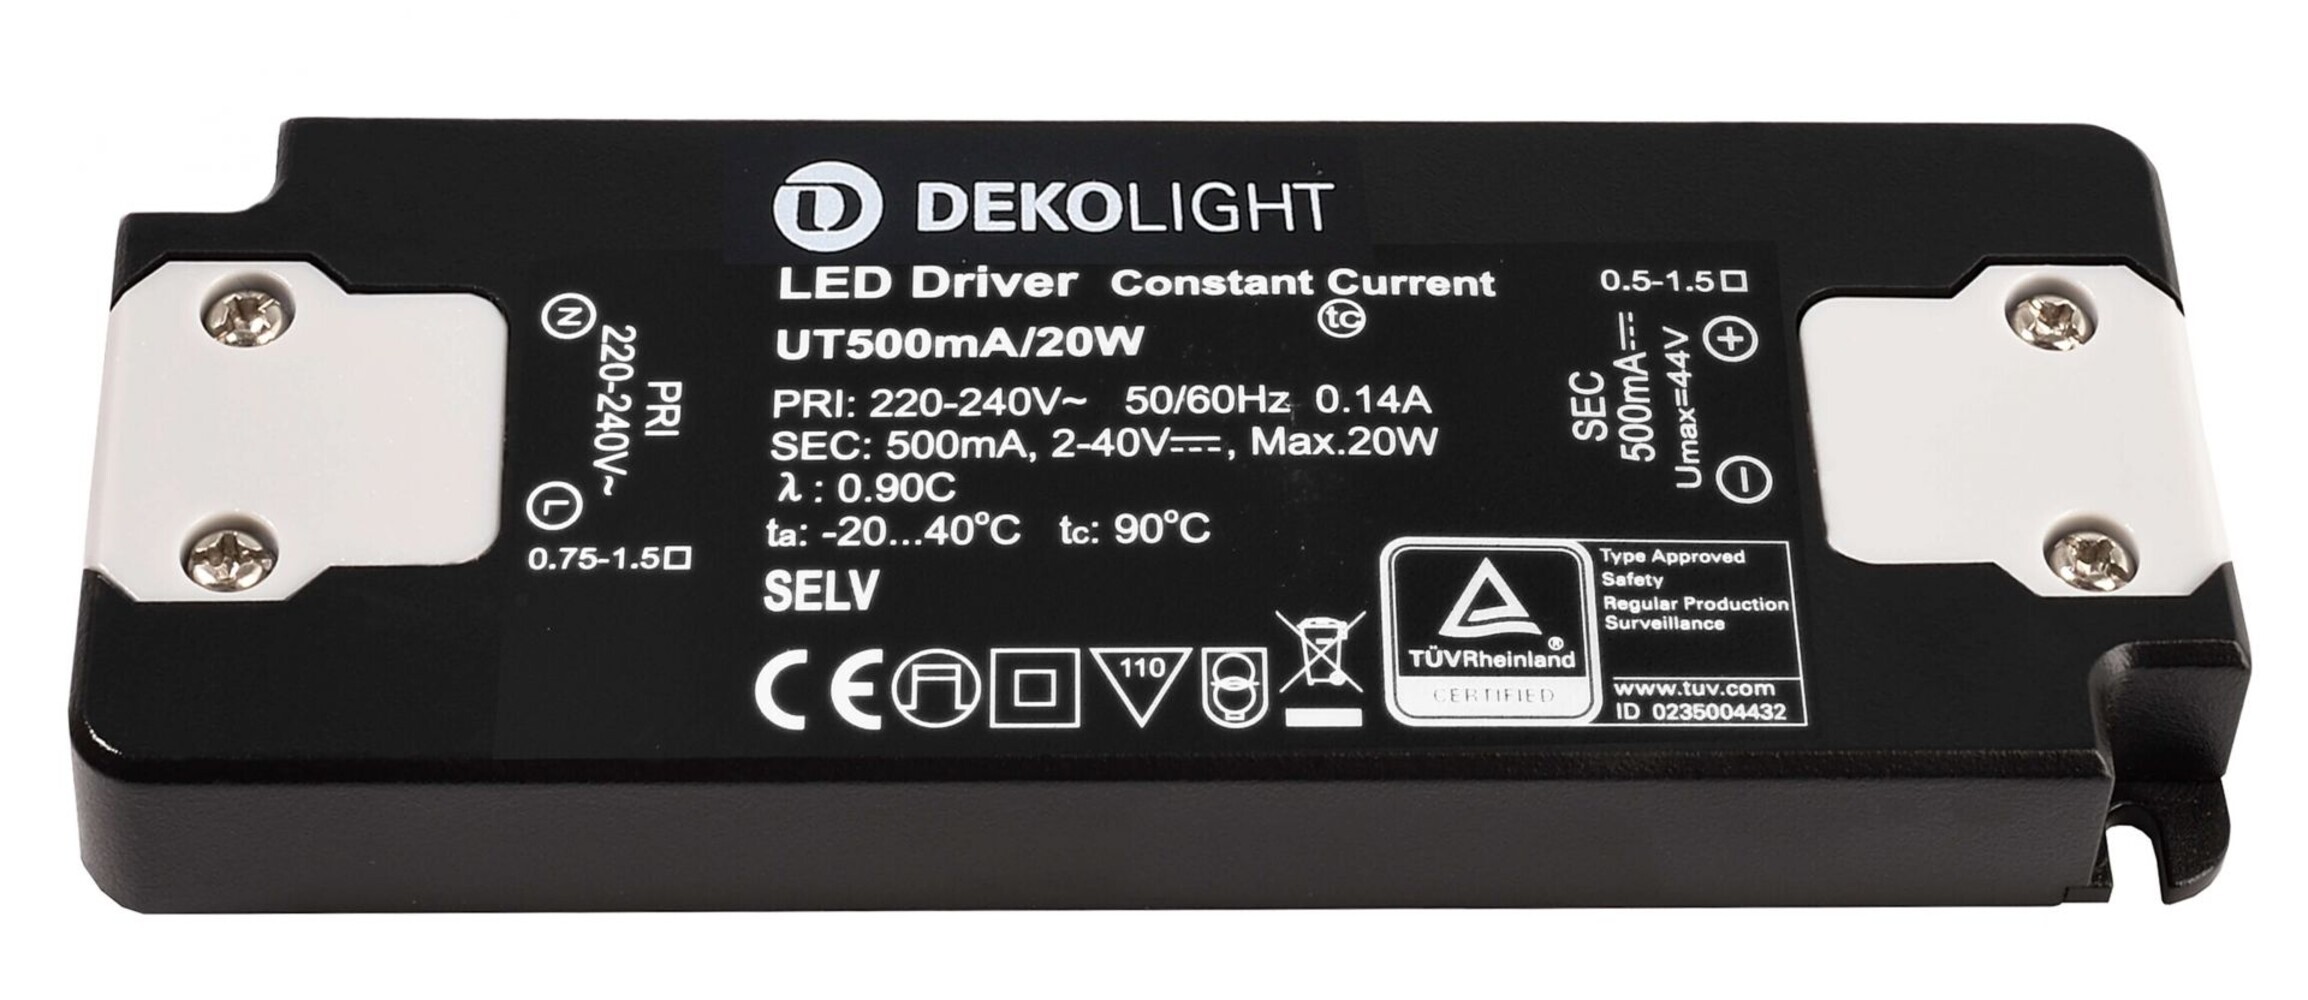 Hochwertiges LED-Netzgerät von Deko-Light in schlanker, flacher Ausführung